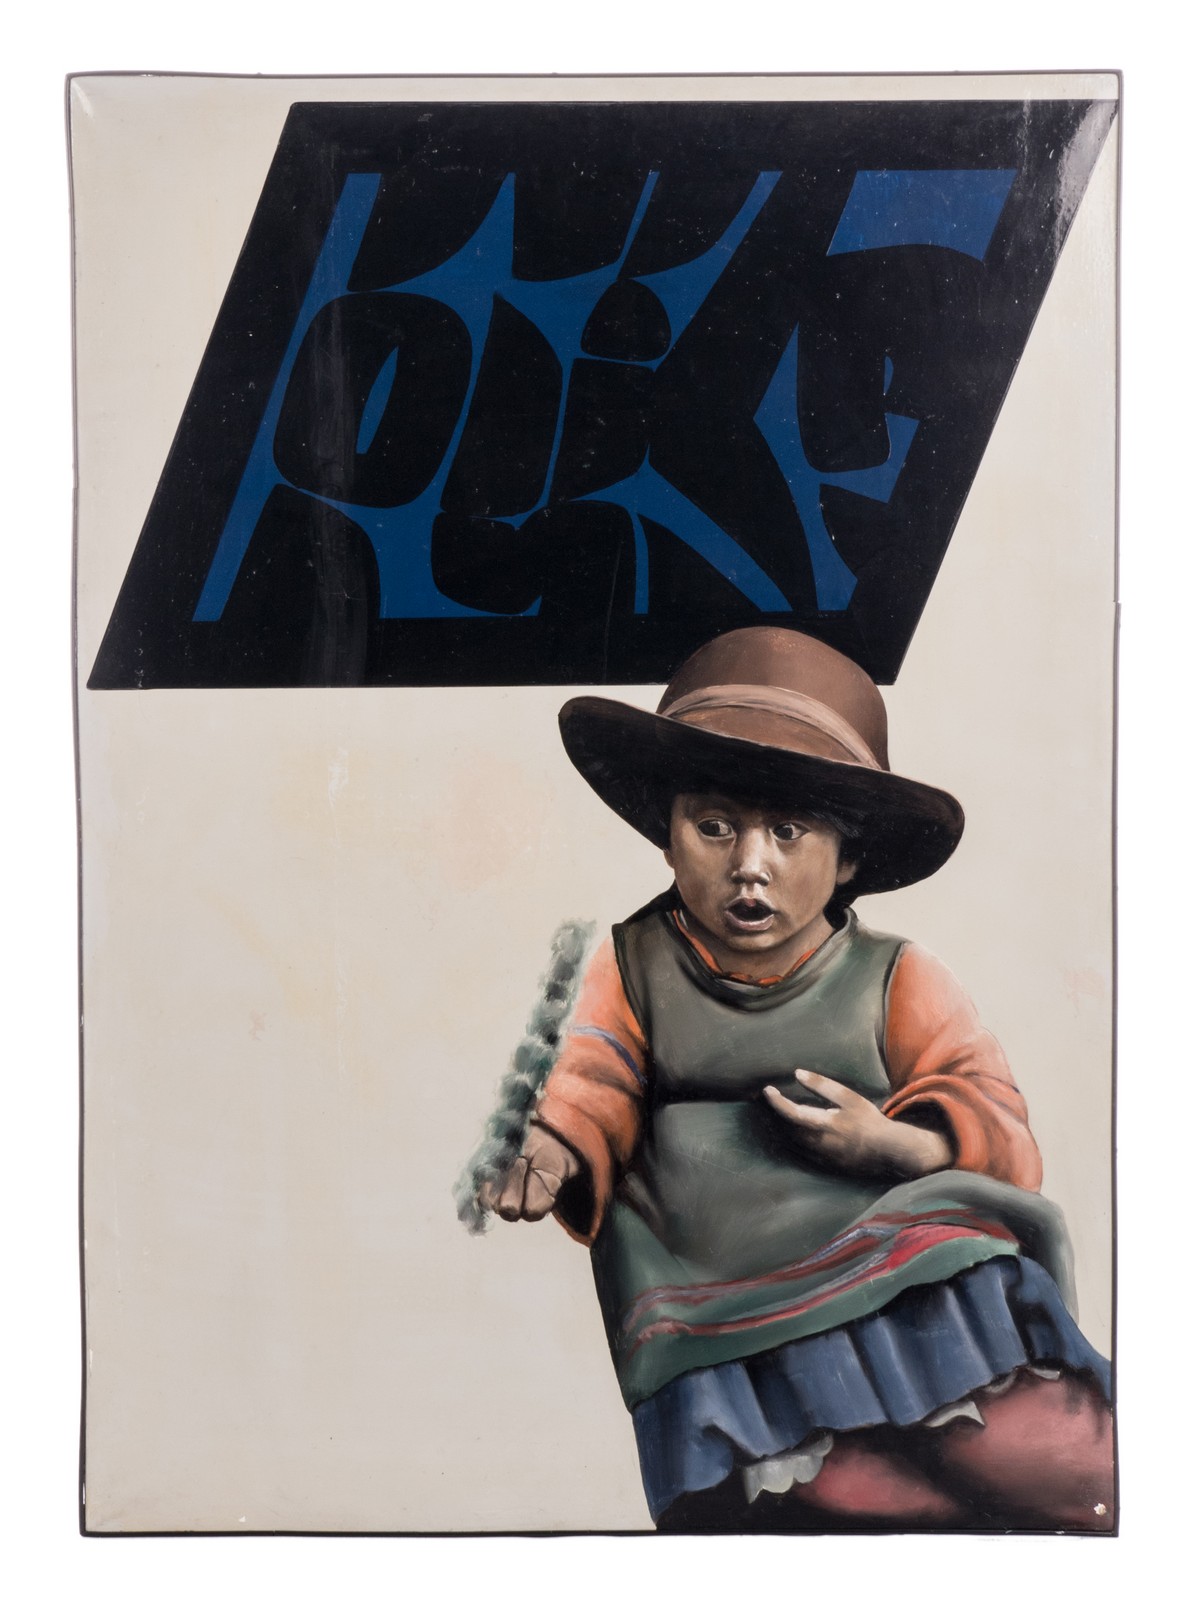 Van den Bulcke J., Maya girl, oil on canvas, 86 x 121 cm